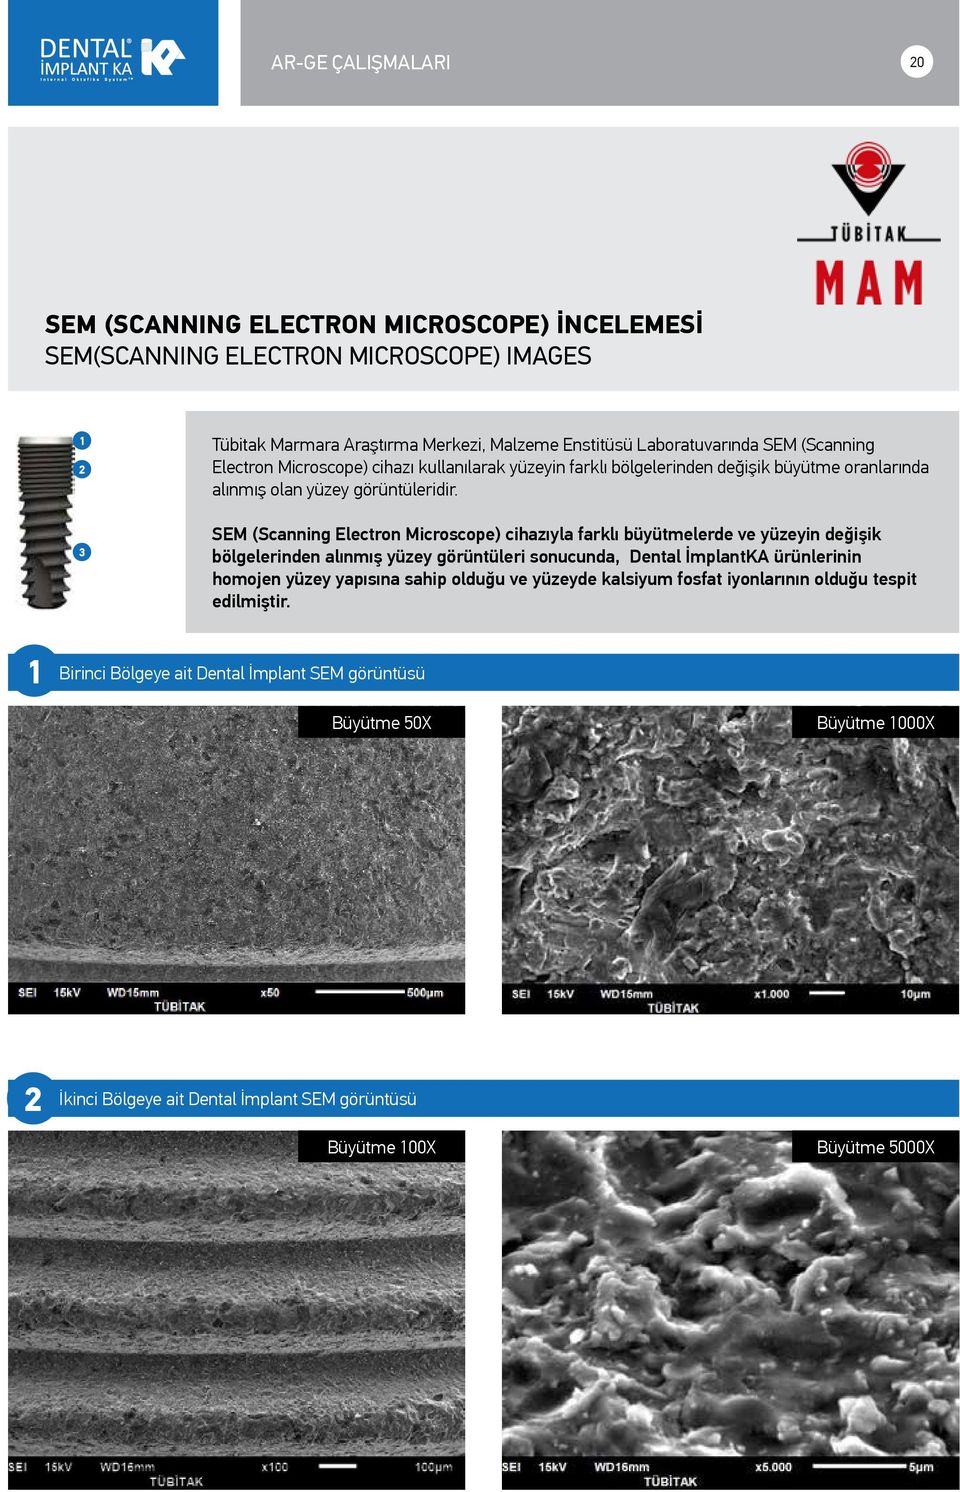 3 SEM (Scanning Electron Microscope) cihazıyla farklı büyütmelerde ve yüzeyin değişik bölgelerinden alınmış yüzey görüntüleri sonucunda, Dental İmplantKA ürünlerinin homojen yüzey